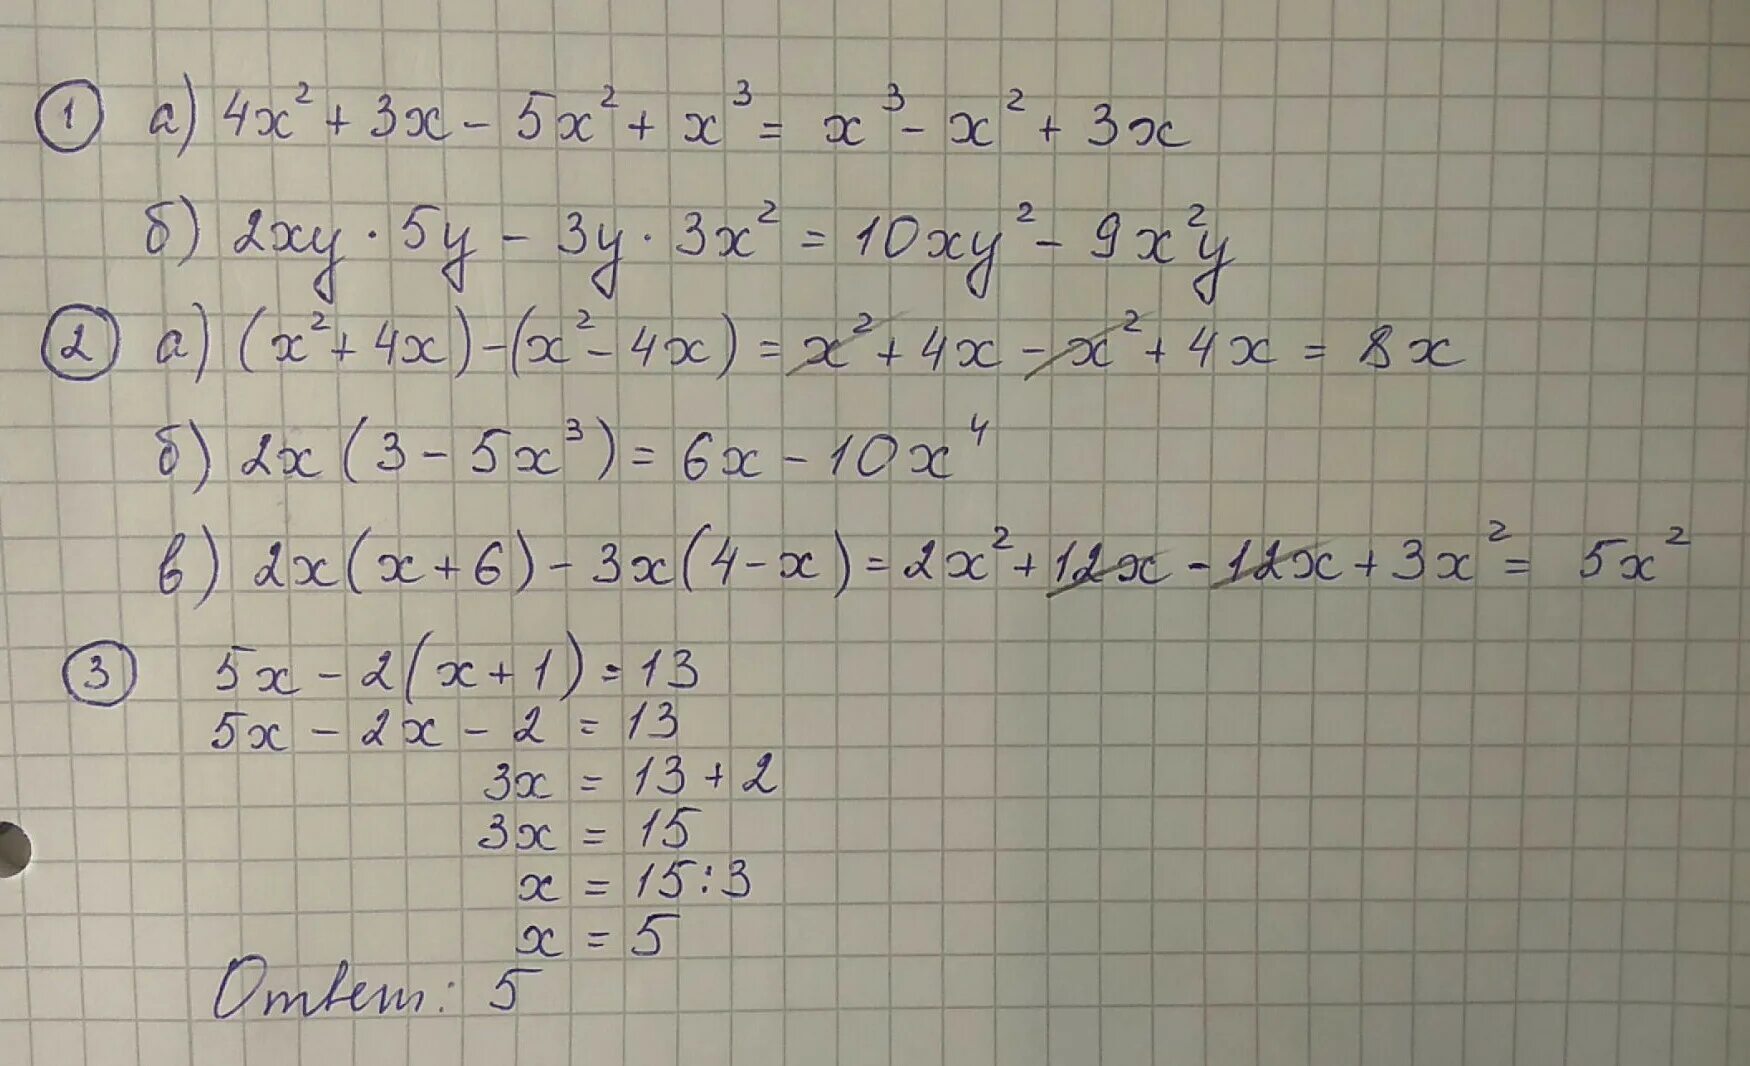 3х 3у 2 4. (5х2 – 3ху -у2) - (*) = х2 + 3ху. Х+2у=5 ху=2. 2ху*5у-3у*3х2. -1.2Ху2 * 6х3у5 с пояснениями.